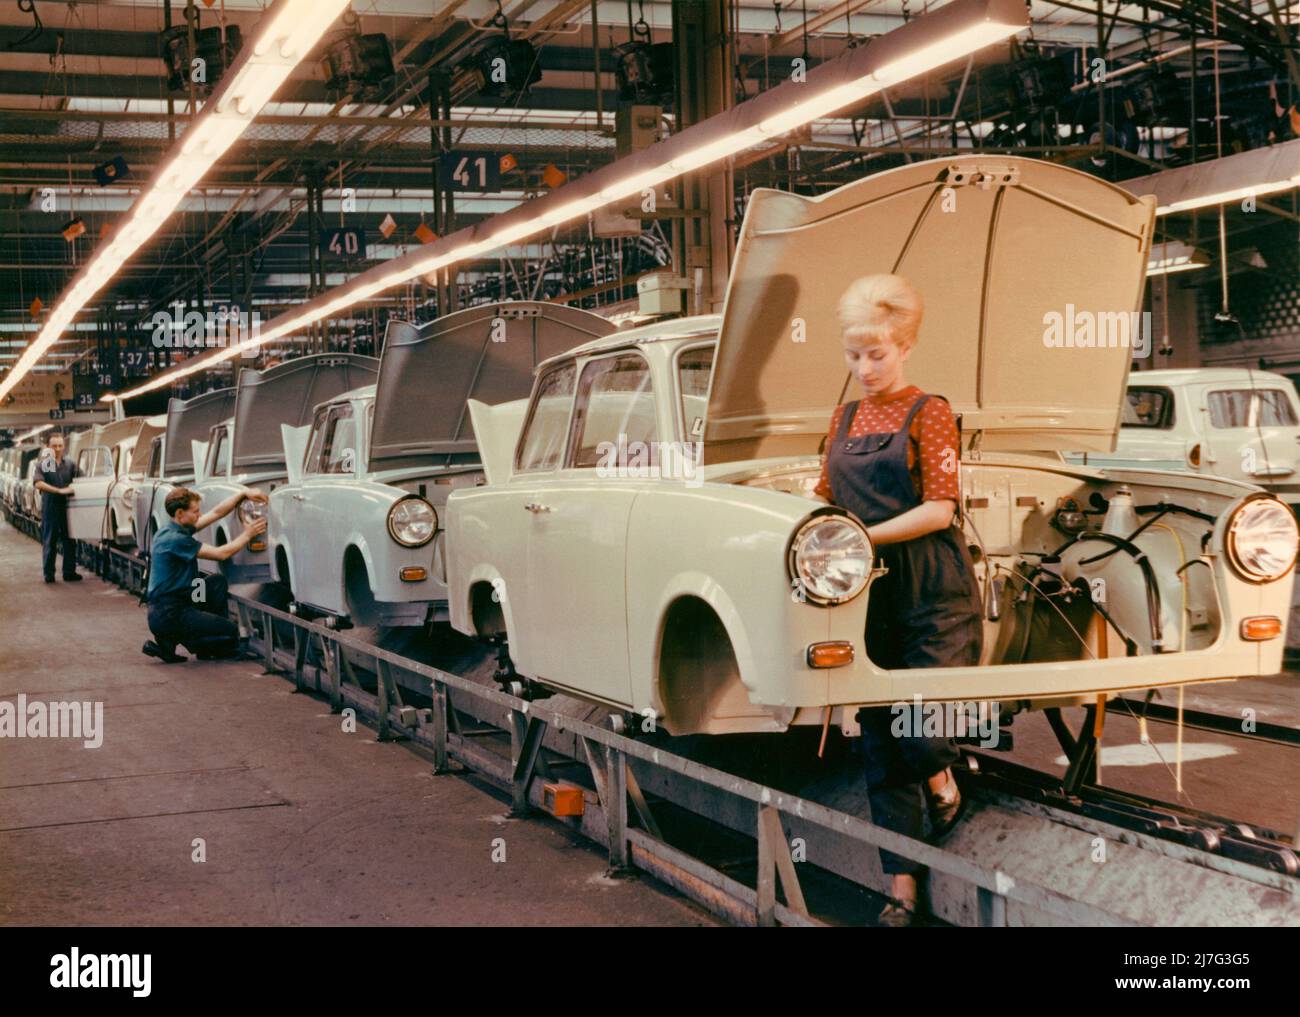 Der Trabant. VEB Sachsenring Automobilwerk. Trabant begann 1957 mit der Herstellung und die Produktion dauerte bis 1991. Insgesamt wurden 3 051385 Trabant hergestellt. Trabant wurde als Antwort von Ostdeutschland auf Volkswagen und die Vision eines Autos für die Menschen entwickelt. Es hieß Trabbi oder Trabi und wurde das häufigste Auto in Ostdeutschland. Trabant wurde während des Sturzes der Berliner Mauer zu einem Symbol für Ostdeutschland. Aufgenommen in der Trabant Autofabrik in Sachsen im Jahr 1960s. Die junge Frau, die an der Montagelinie steht, hat die typische Frisur der 1960s, die Be Stockfoto